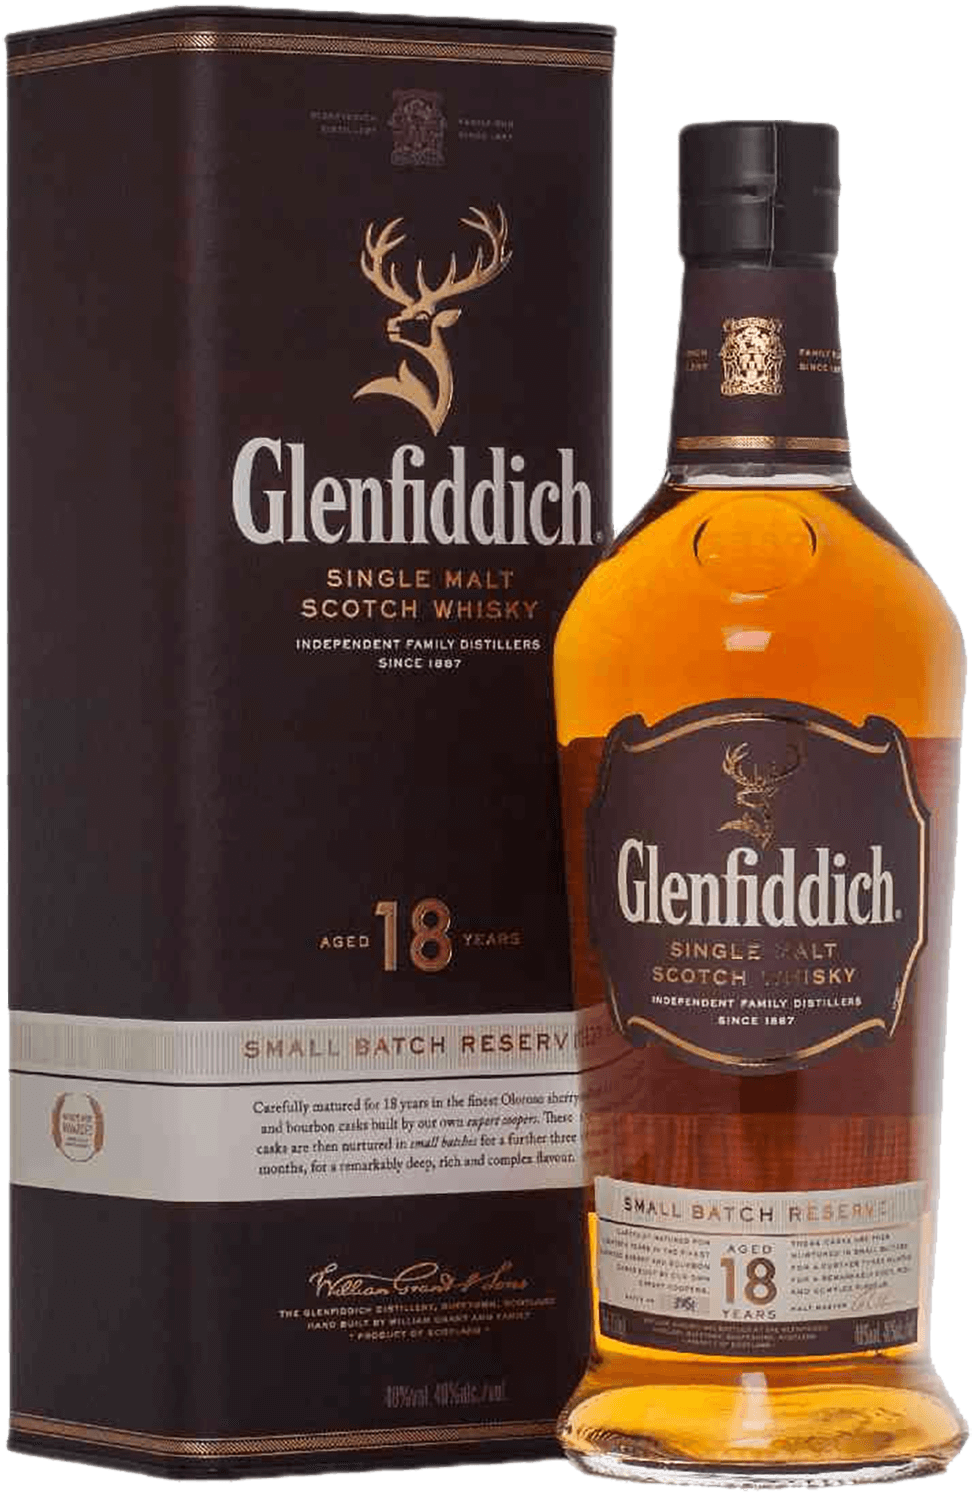 Glenfiddich 18 y.o. Single Malt Scotch Whisky (gift box) glenfiddich project хх single malt scotch whisky gift box